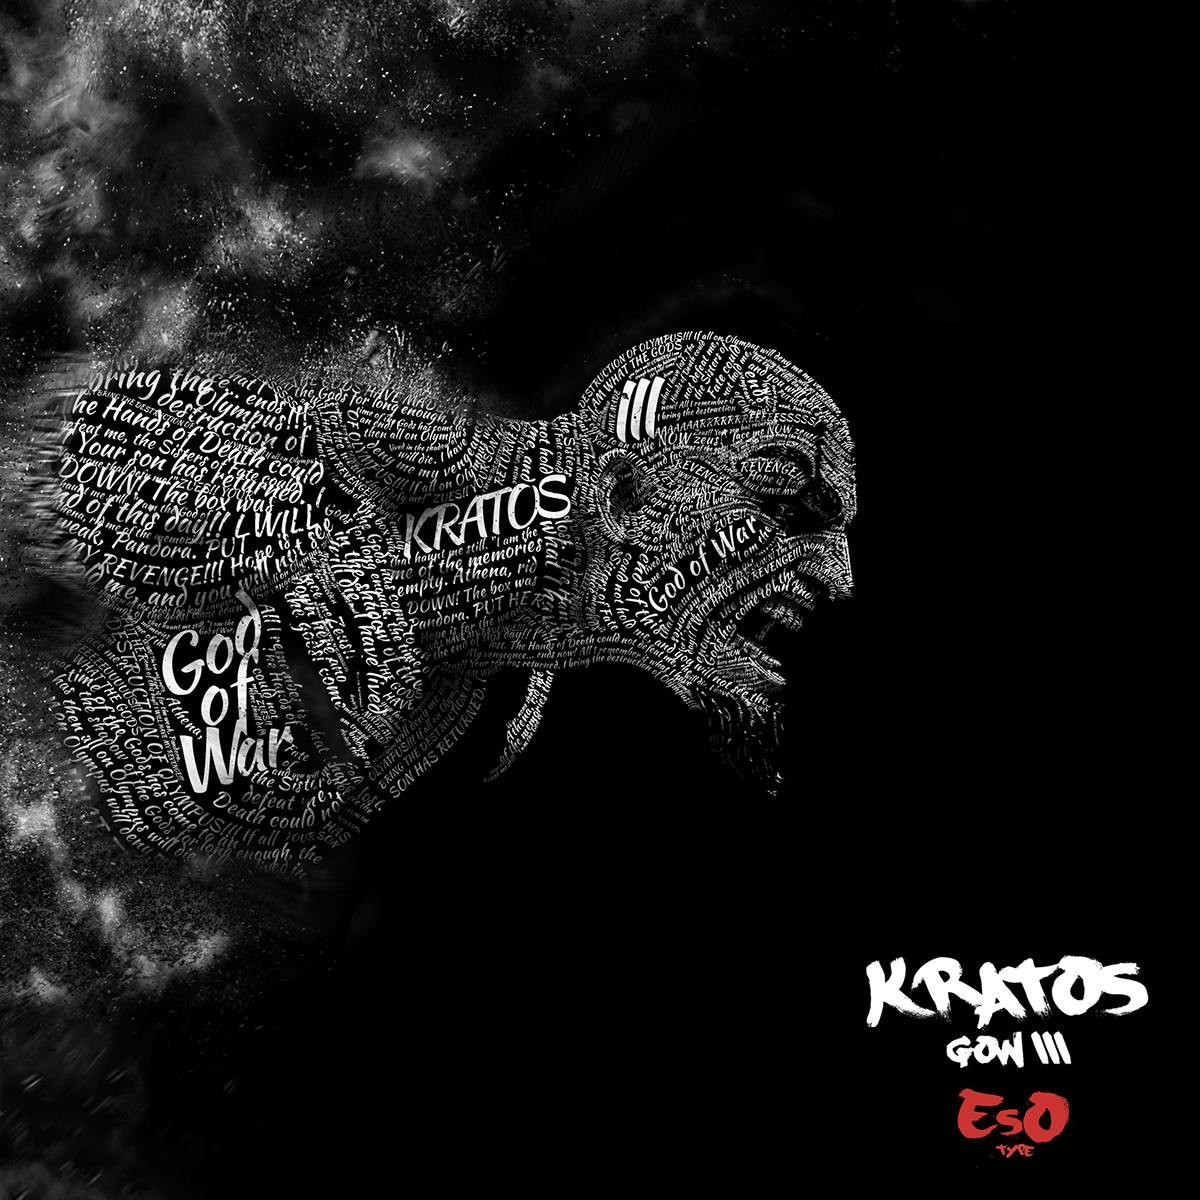  Kratos EsO Type